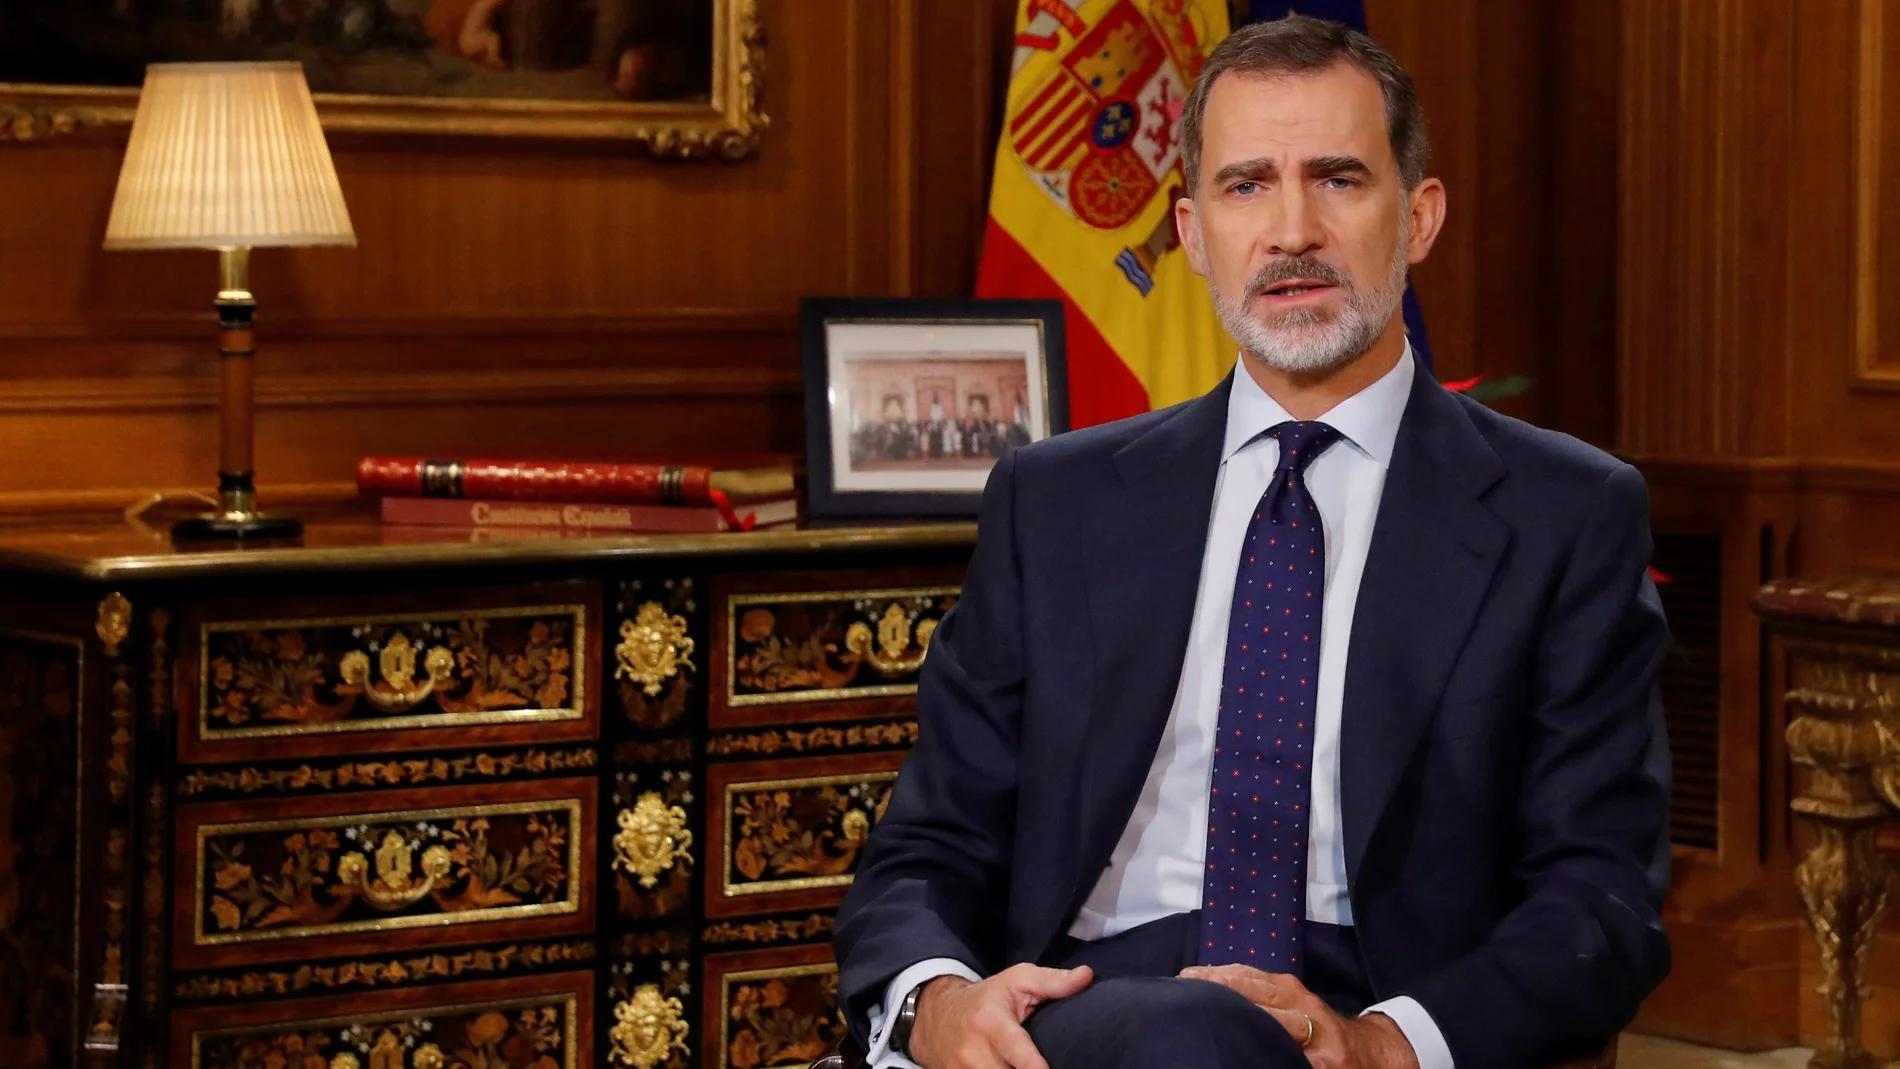 El Rey Felipe VI dirige a los españoles el tradicional mensaje de Navidad, el sexto de su reinado, desde el Palacio de La Zarzuela. EFE/Ballesteros/pool